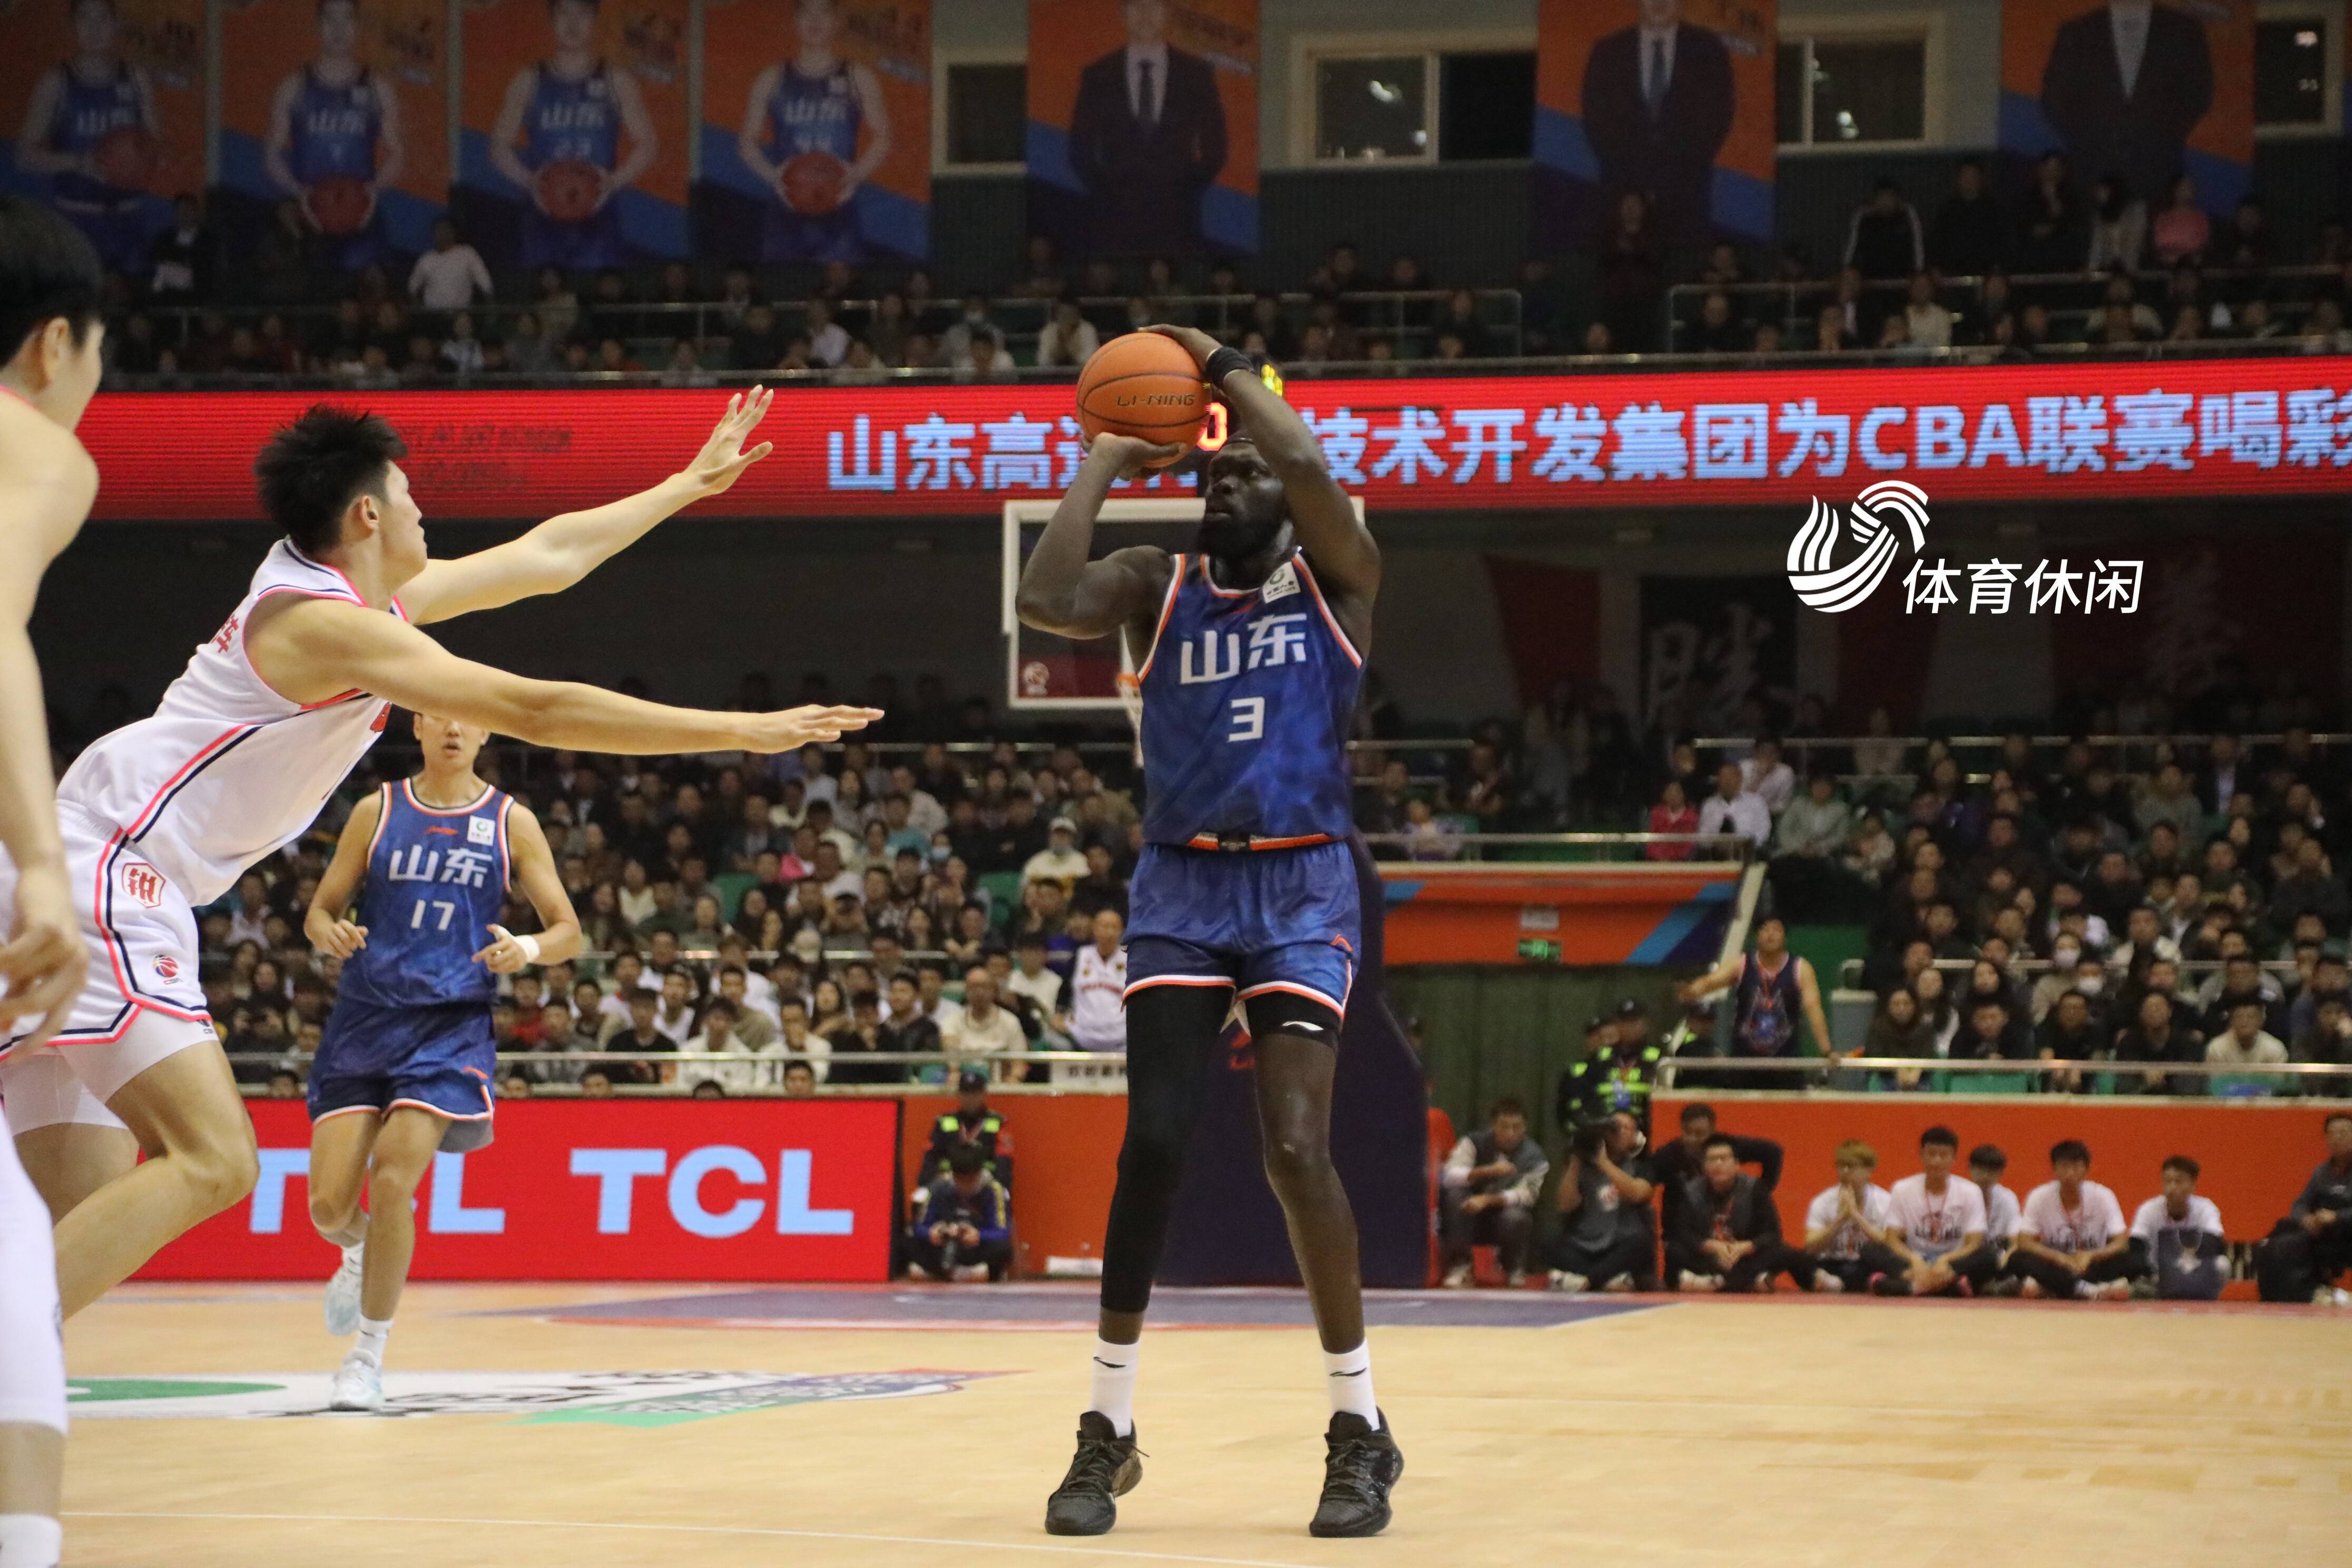 山东高速男篮将迎来一场关键的主场战役,对手是实力强劲的浙江广厦